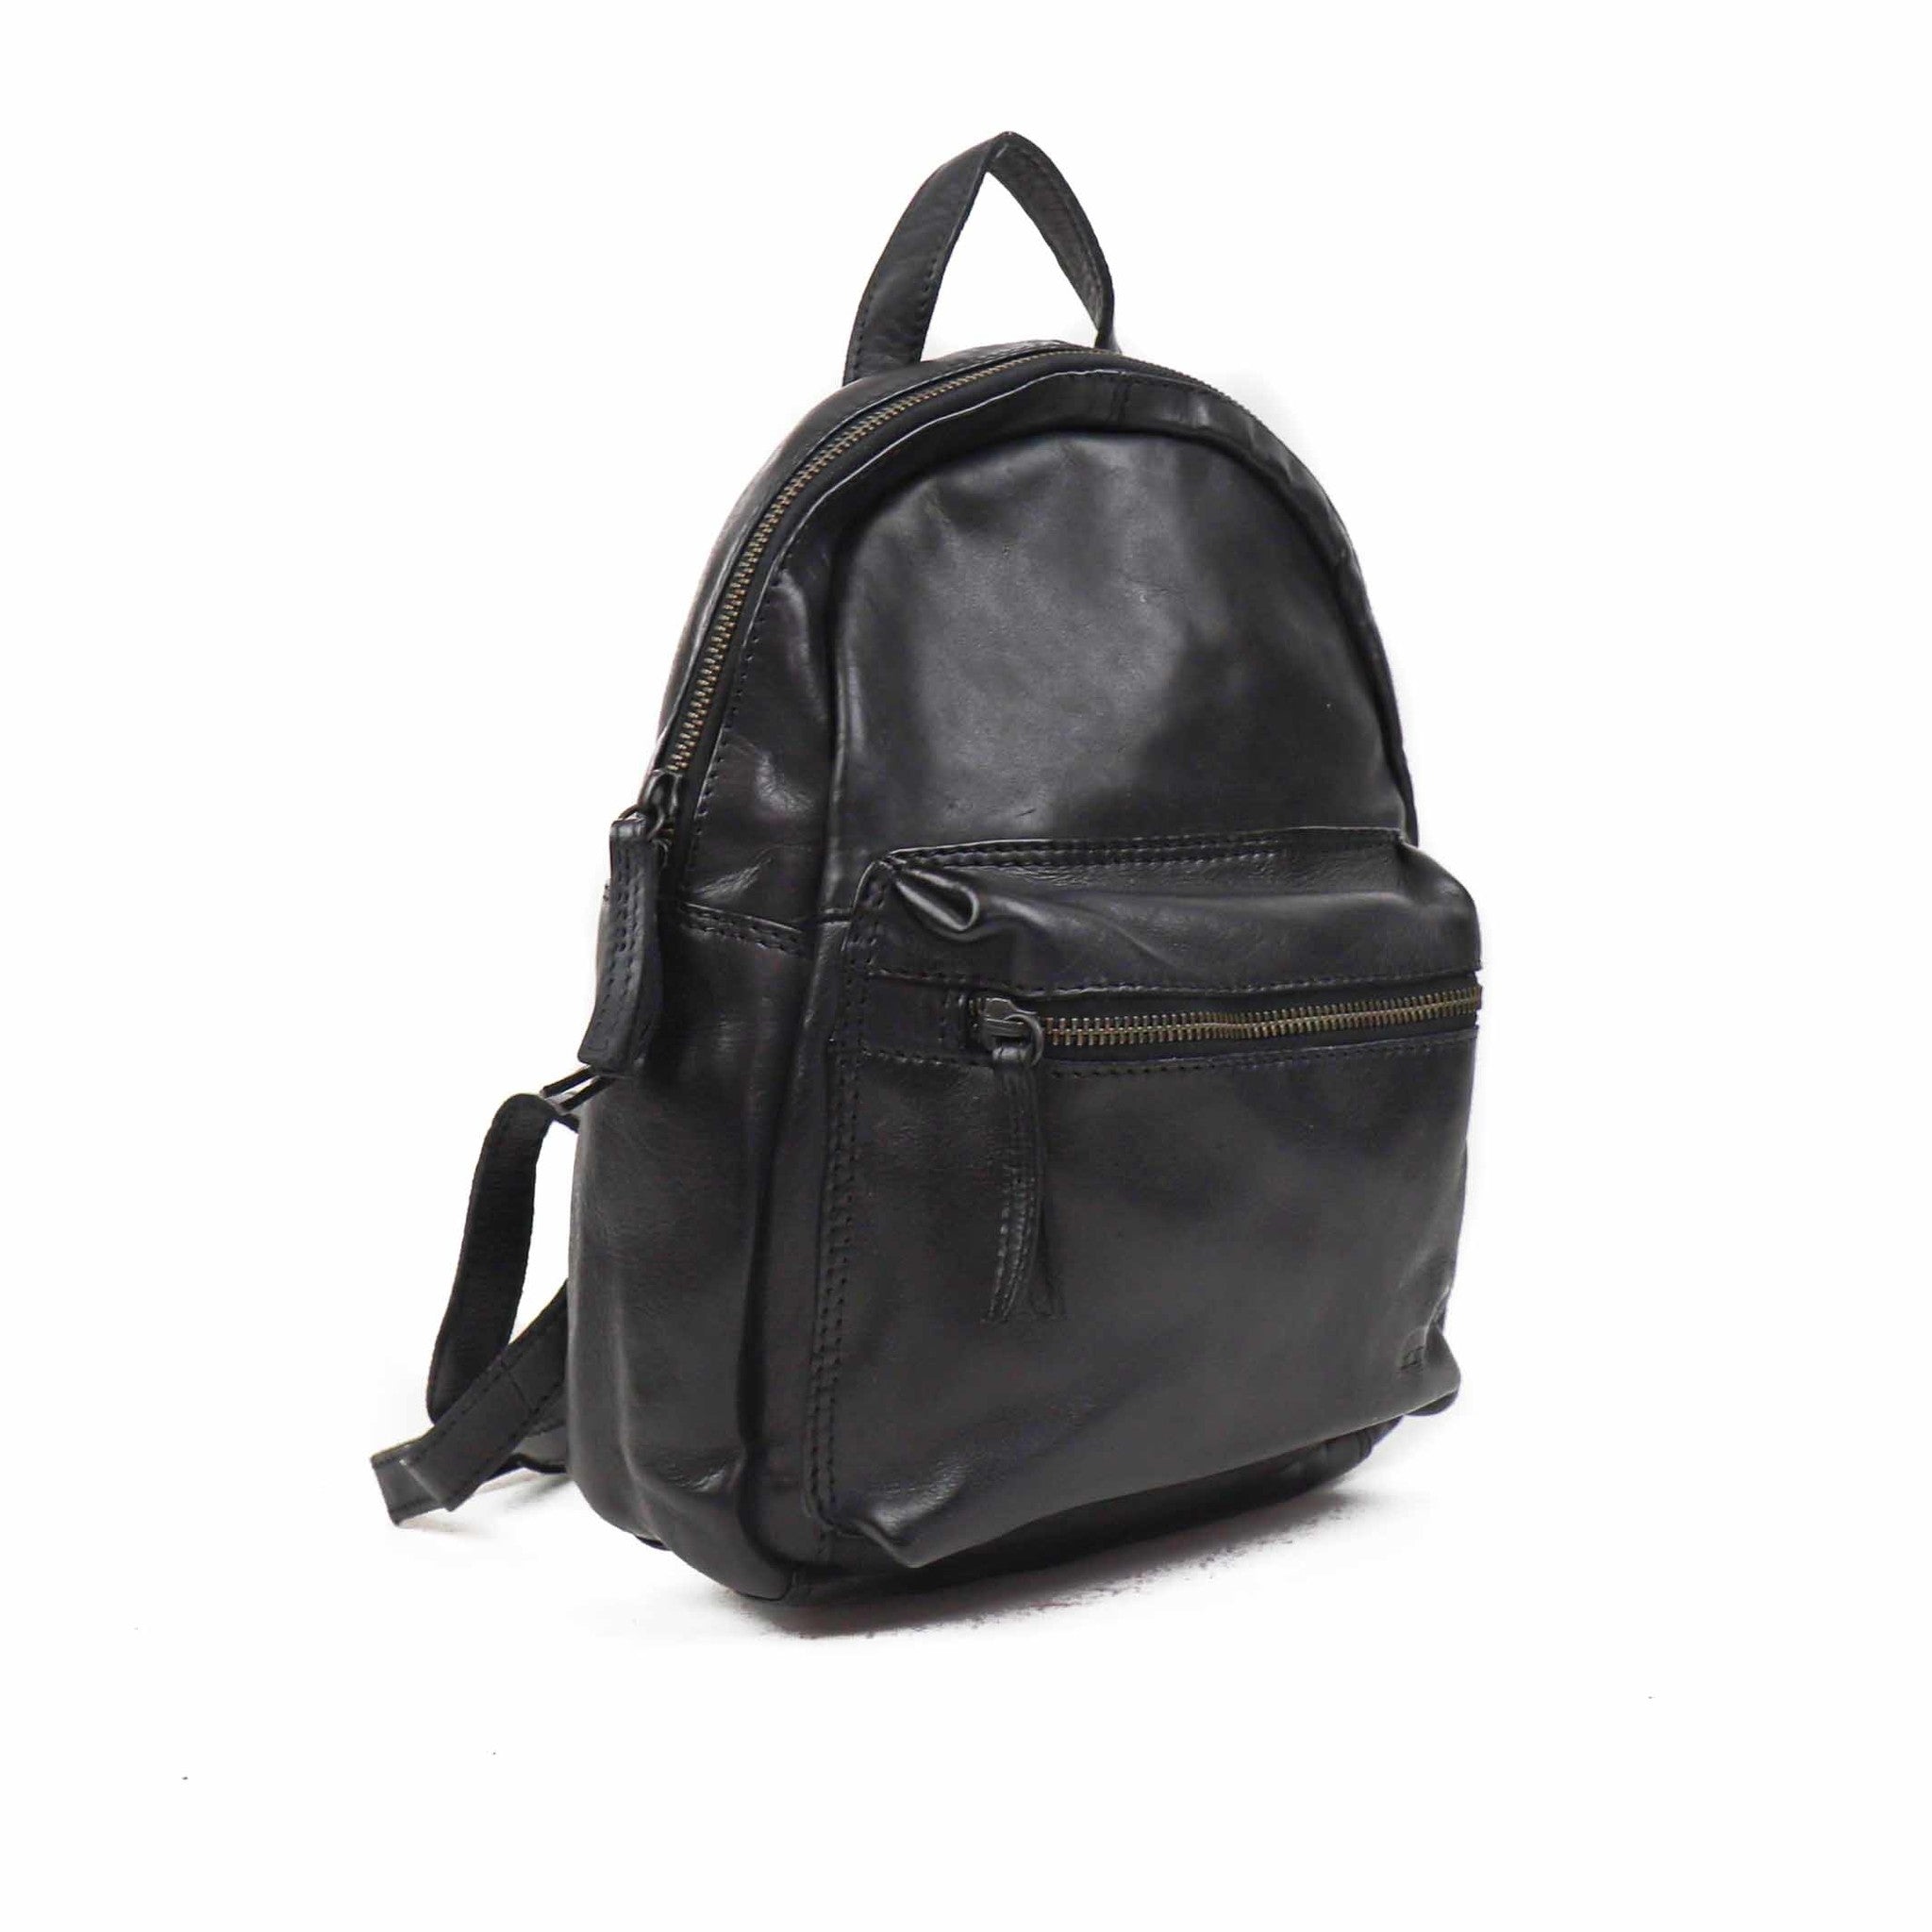 Backpack 'Nora' black - CL 40706